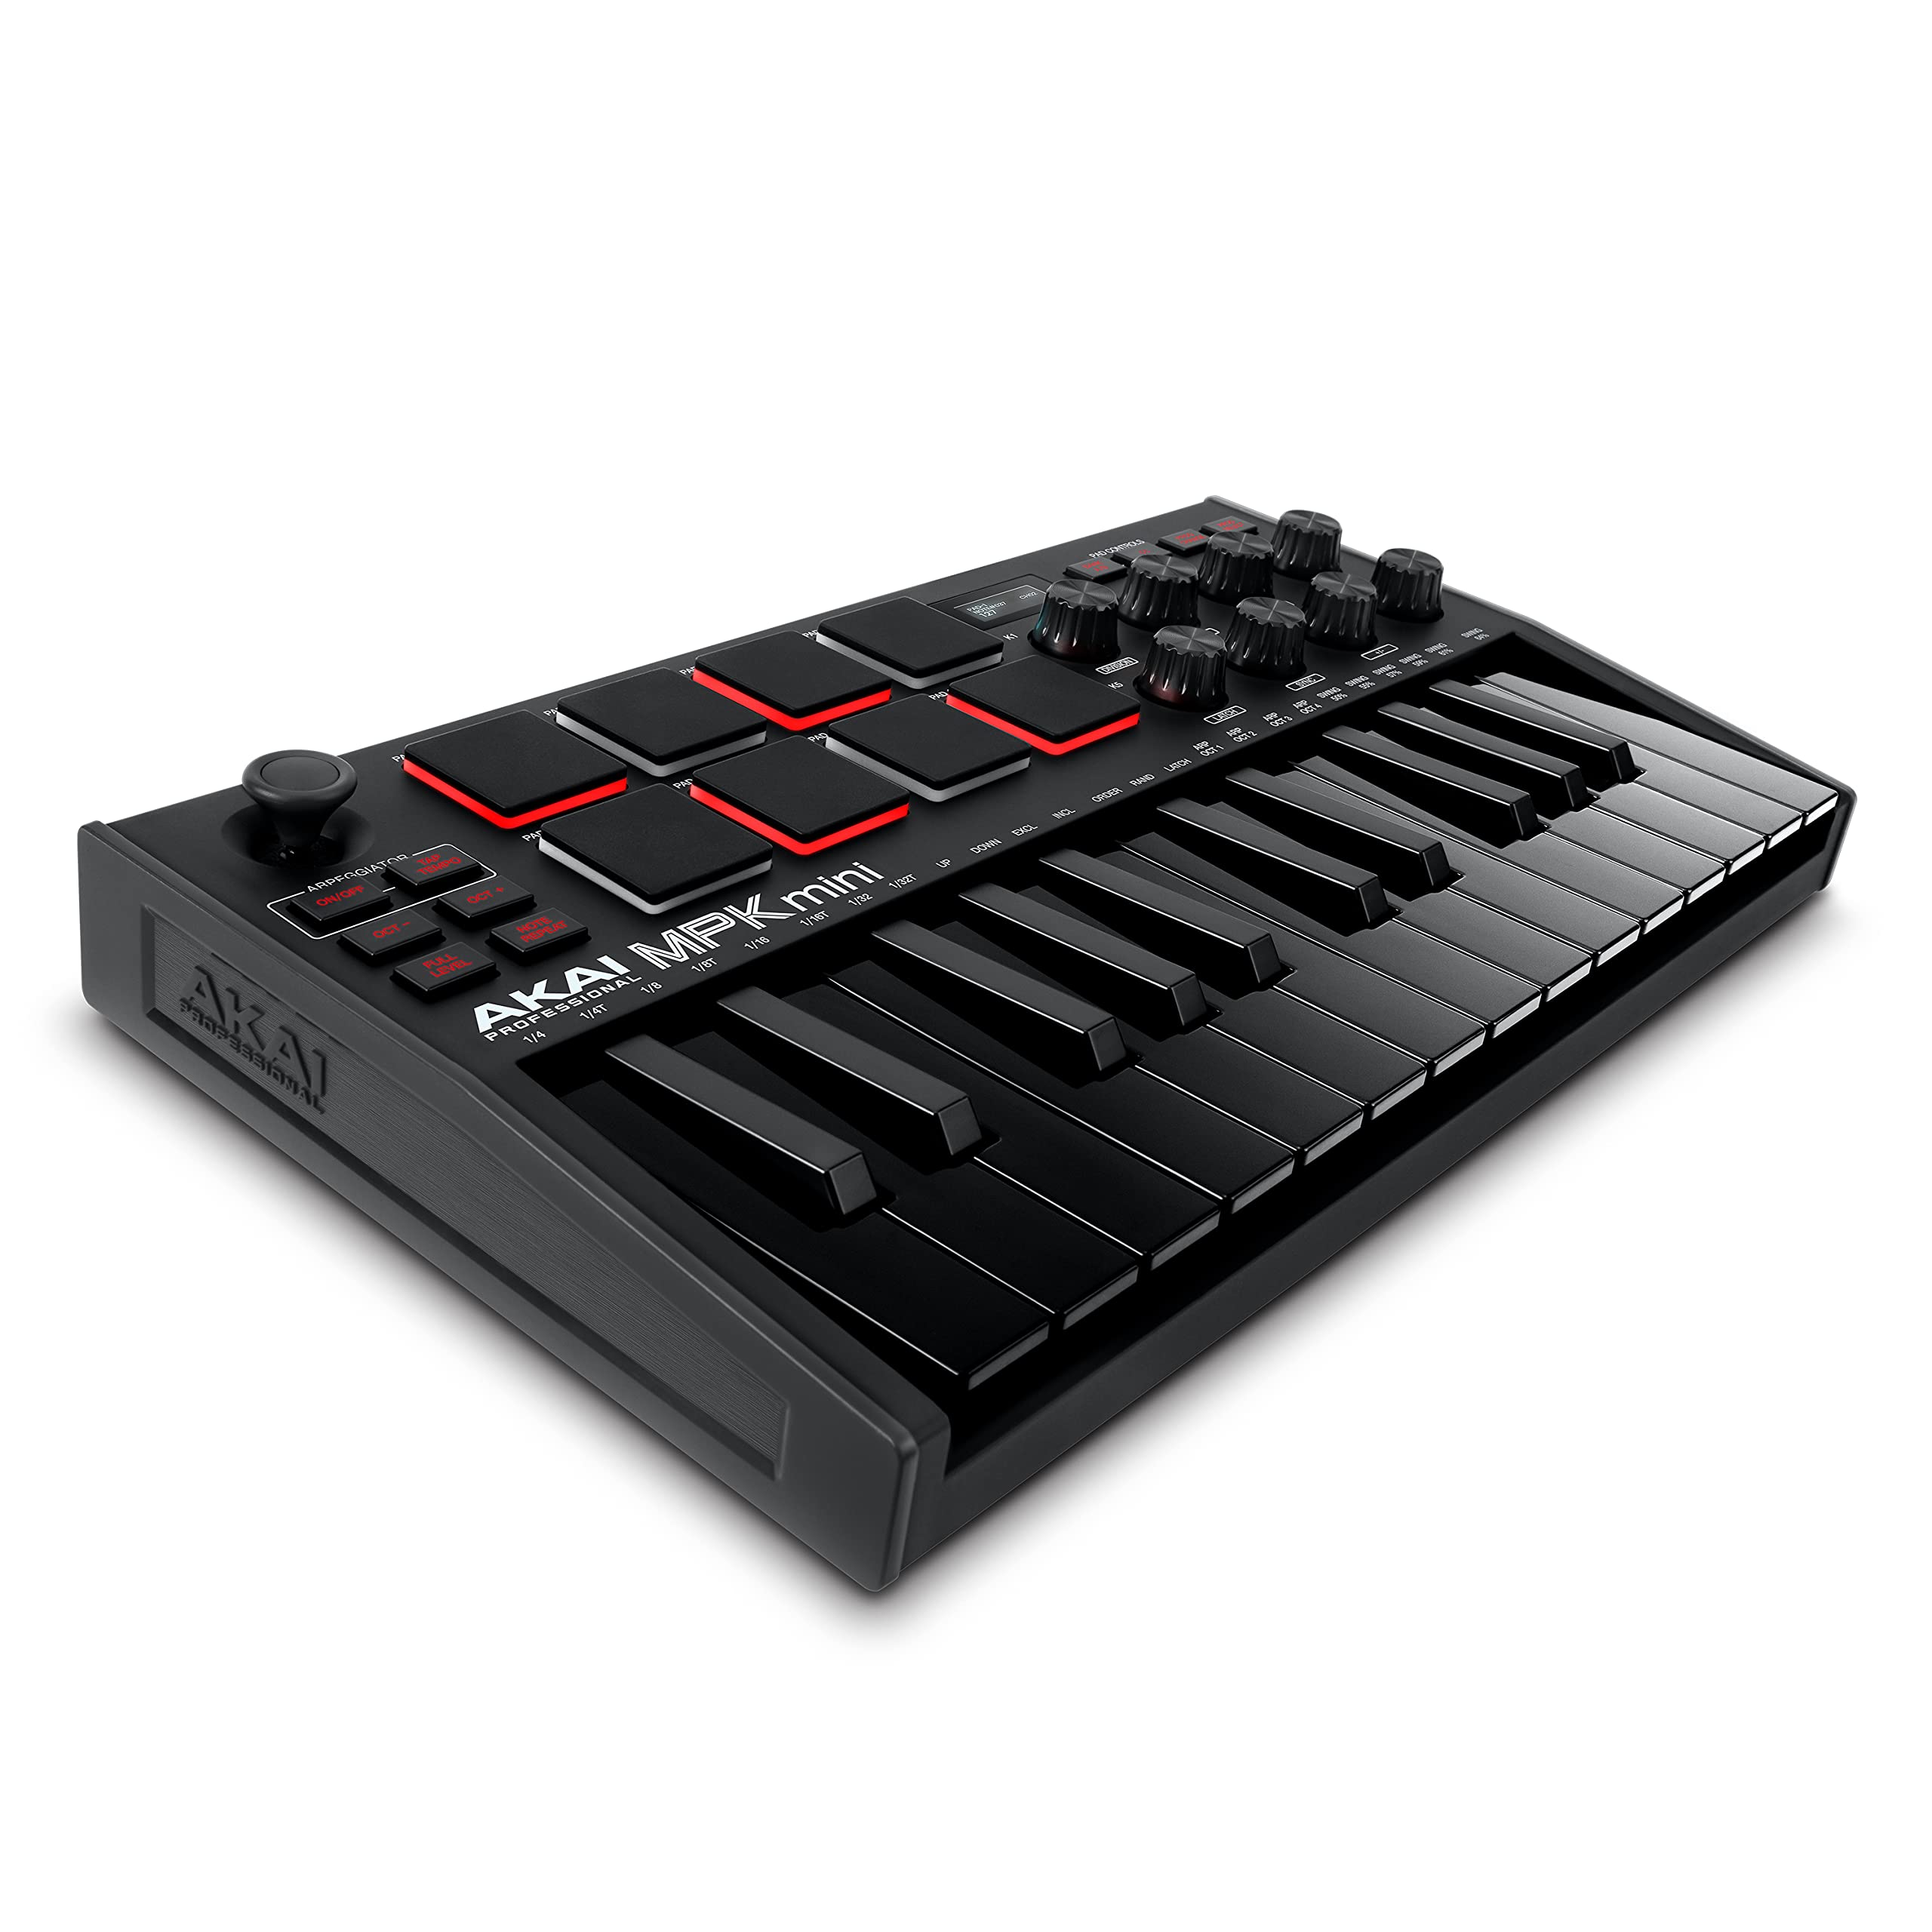 Akai Professional MPK Mini MK3 - 25 キー USB MIDI キーボード コントローラー 8 バックライト付きドラムパッド、8 ノブ、音楽制作ソフトウェア付属 (ブラック)